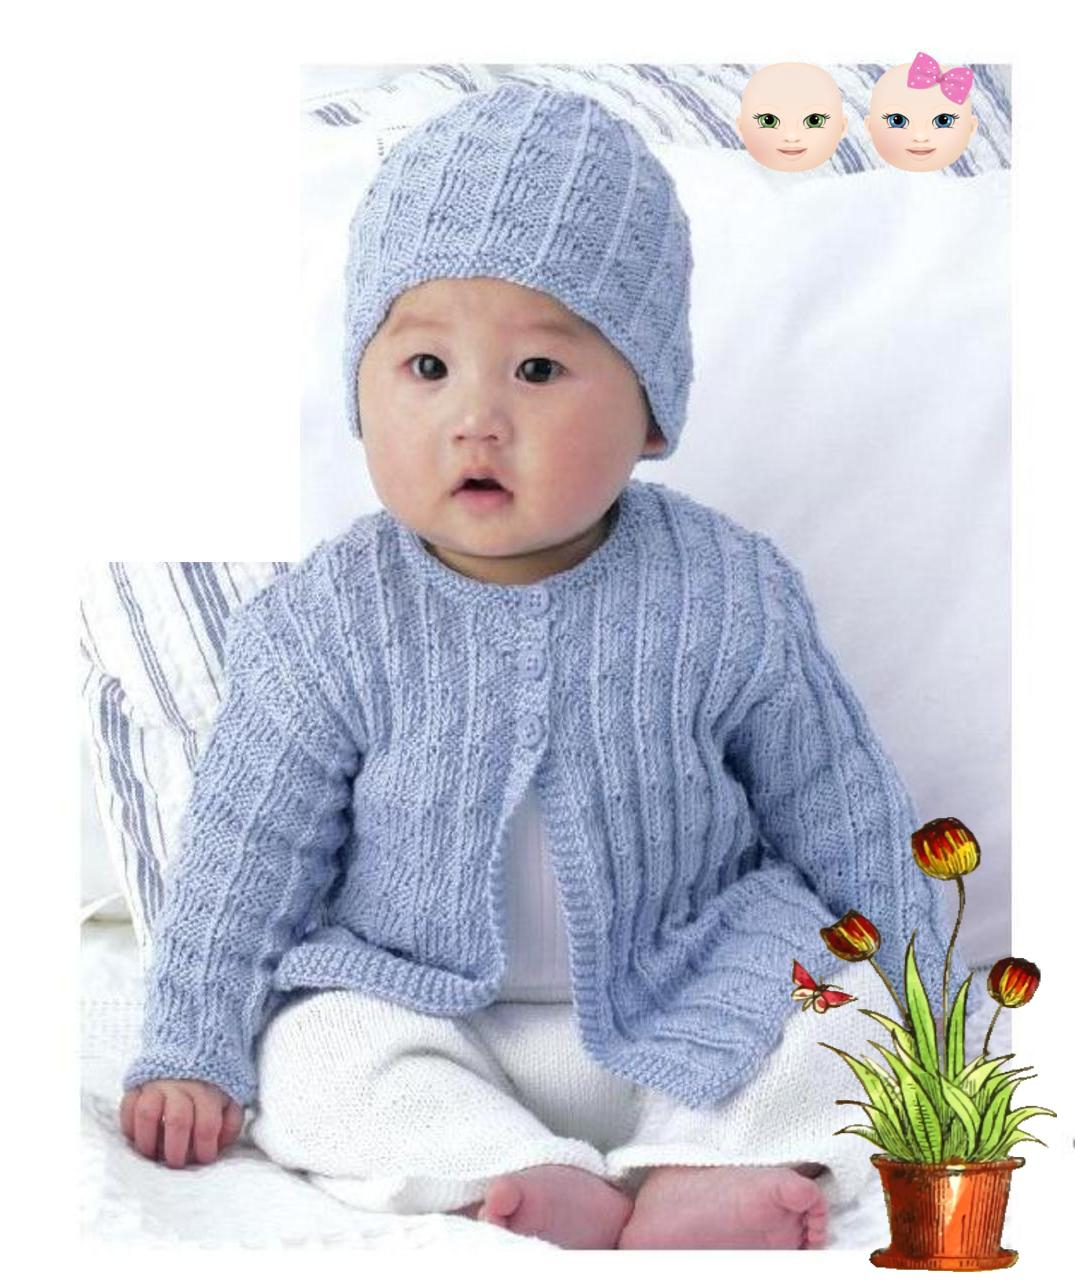 Baby Hoodie Knitting Pattern Free Free Pdf Digital Knitting Pattern Ba Aran Cardigan Jacket Hat